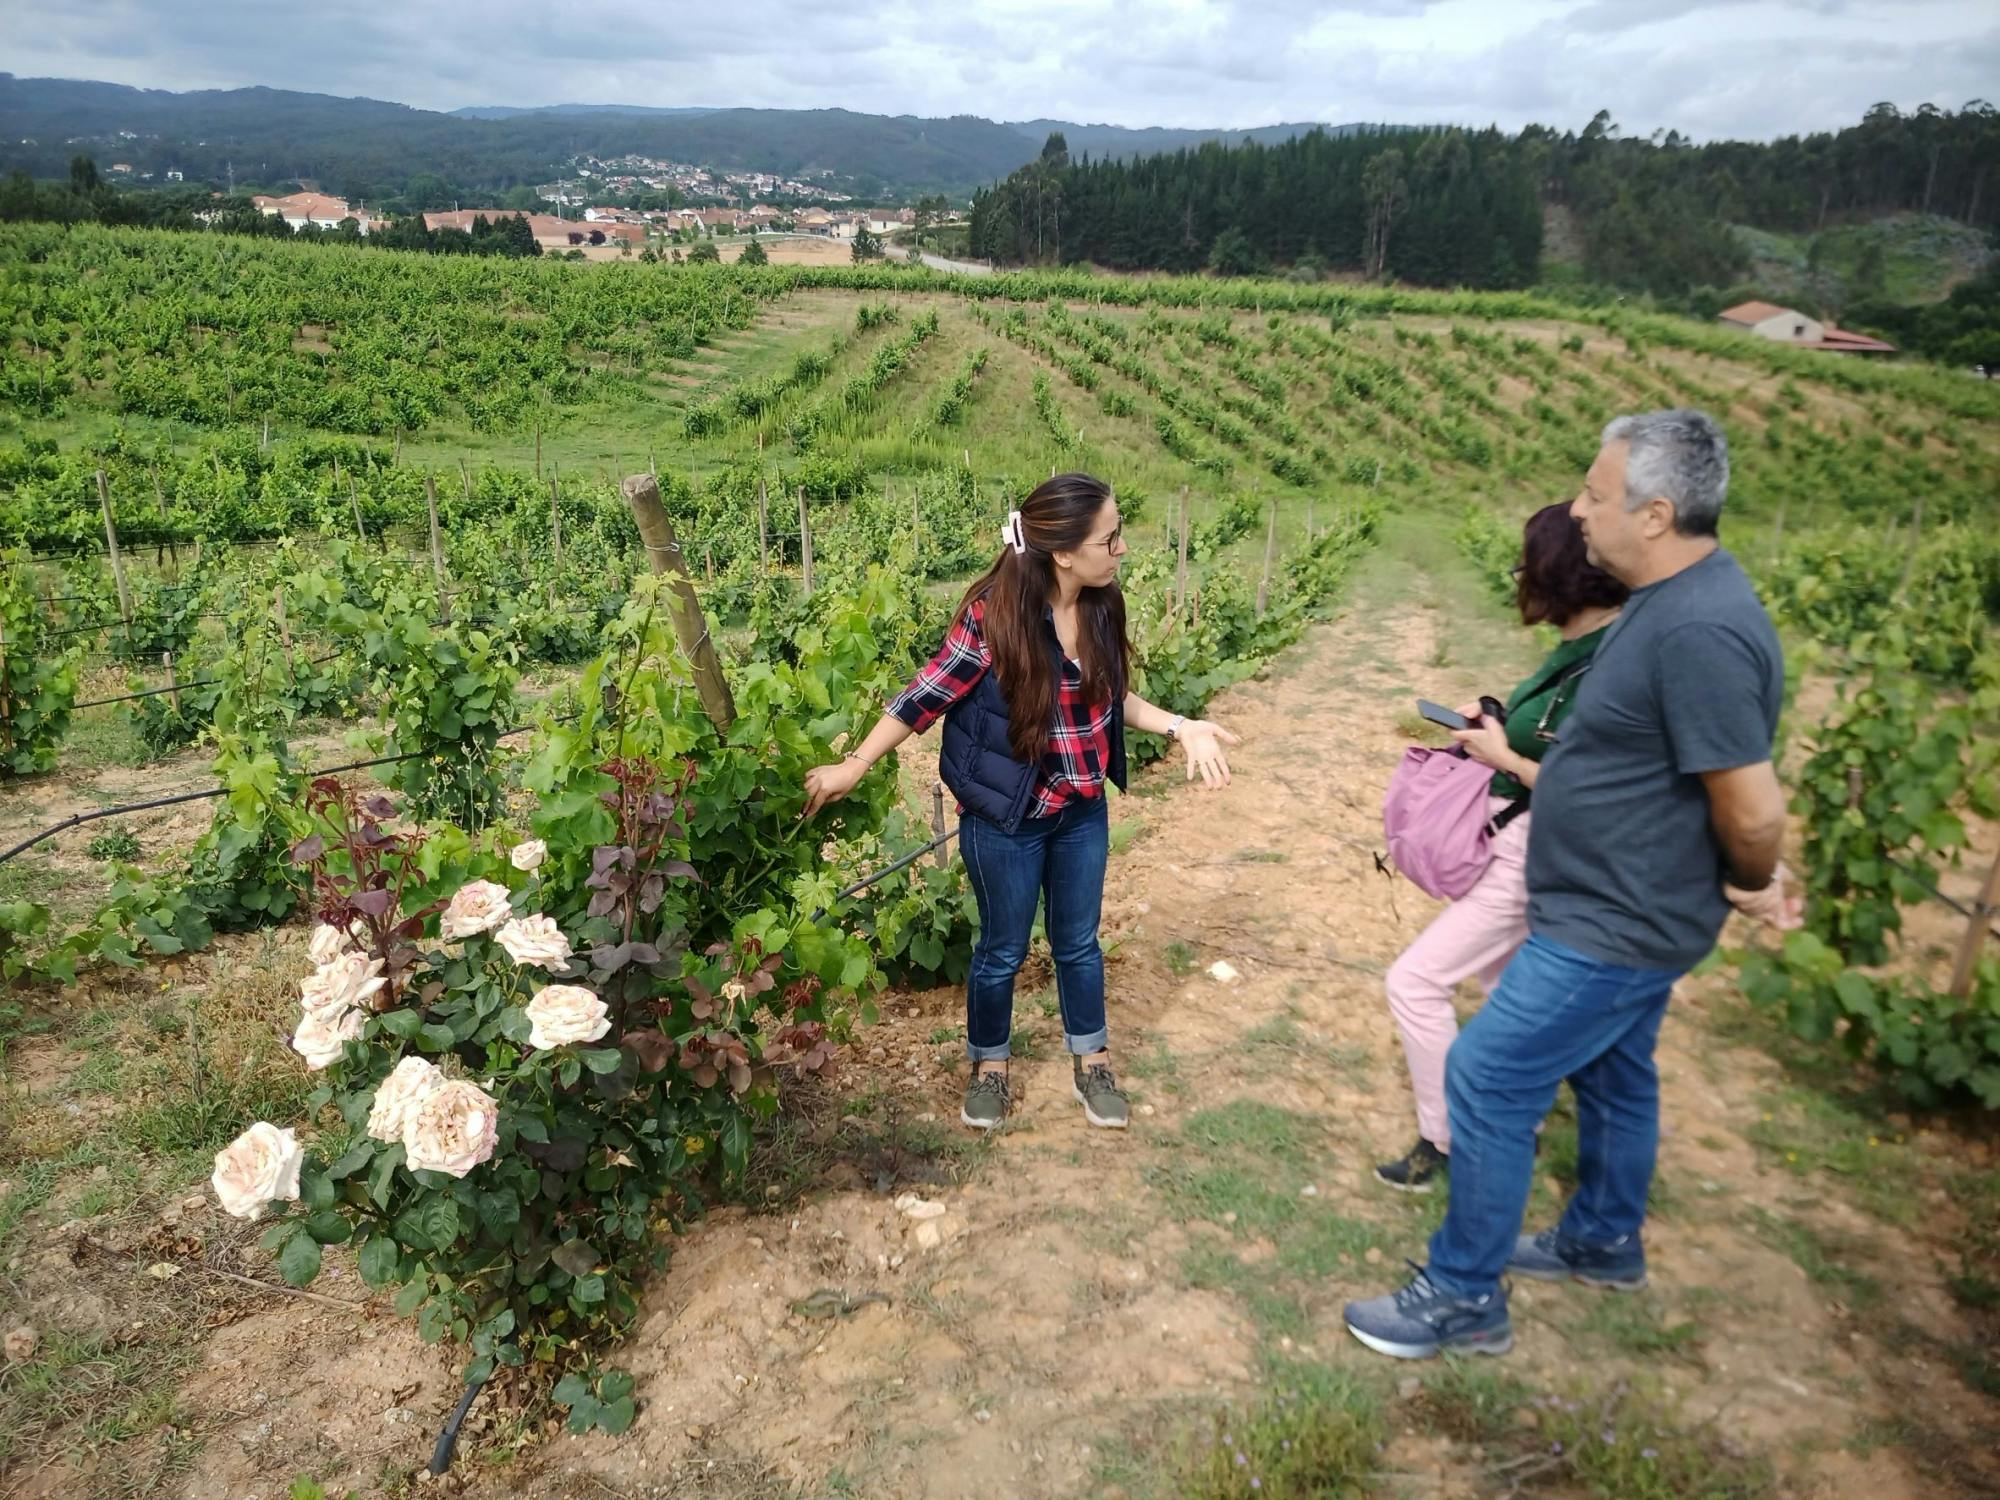 Excursión de día completo a Dão desde Coimbra con degustación de vinos y almuerzo.